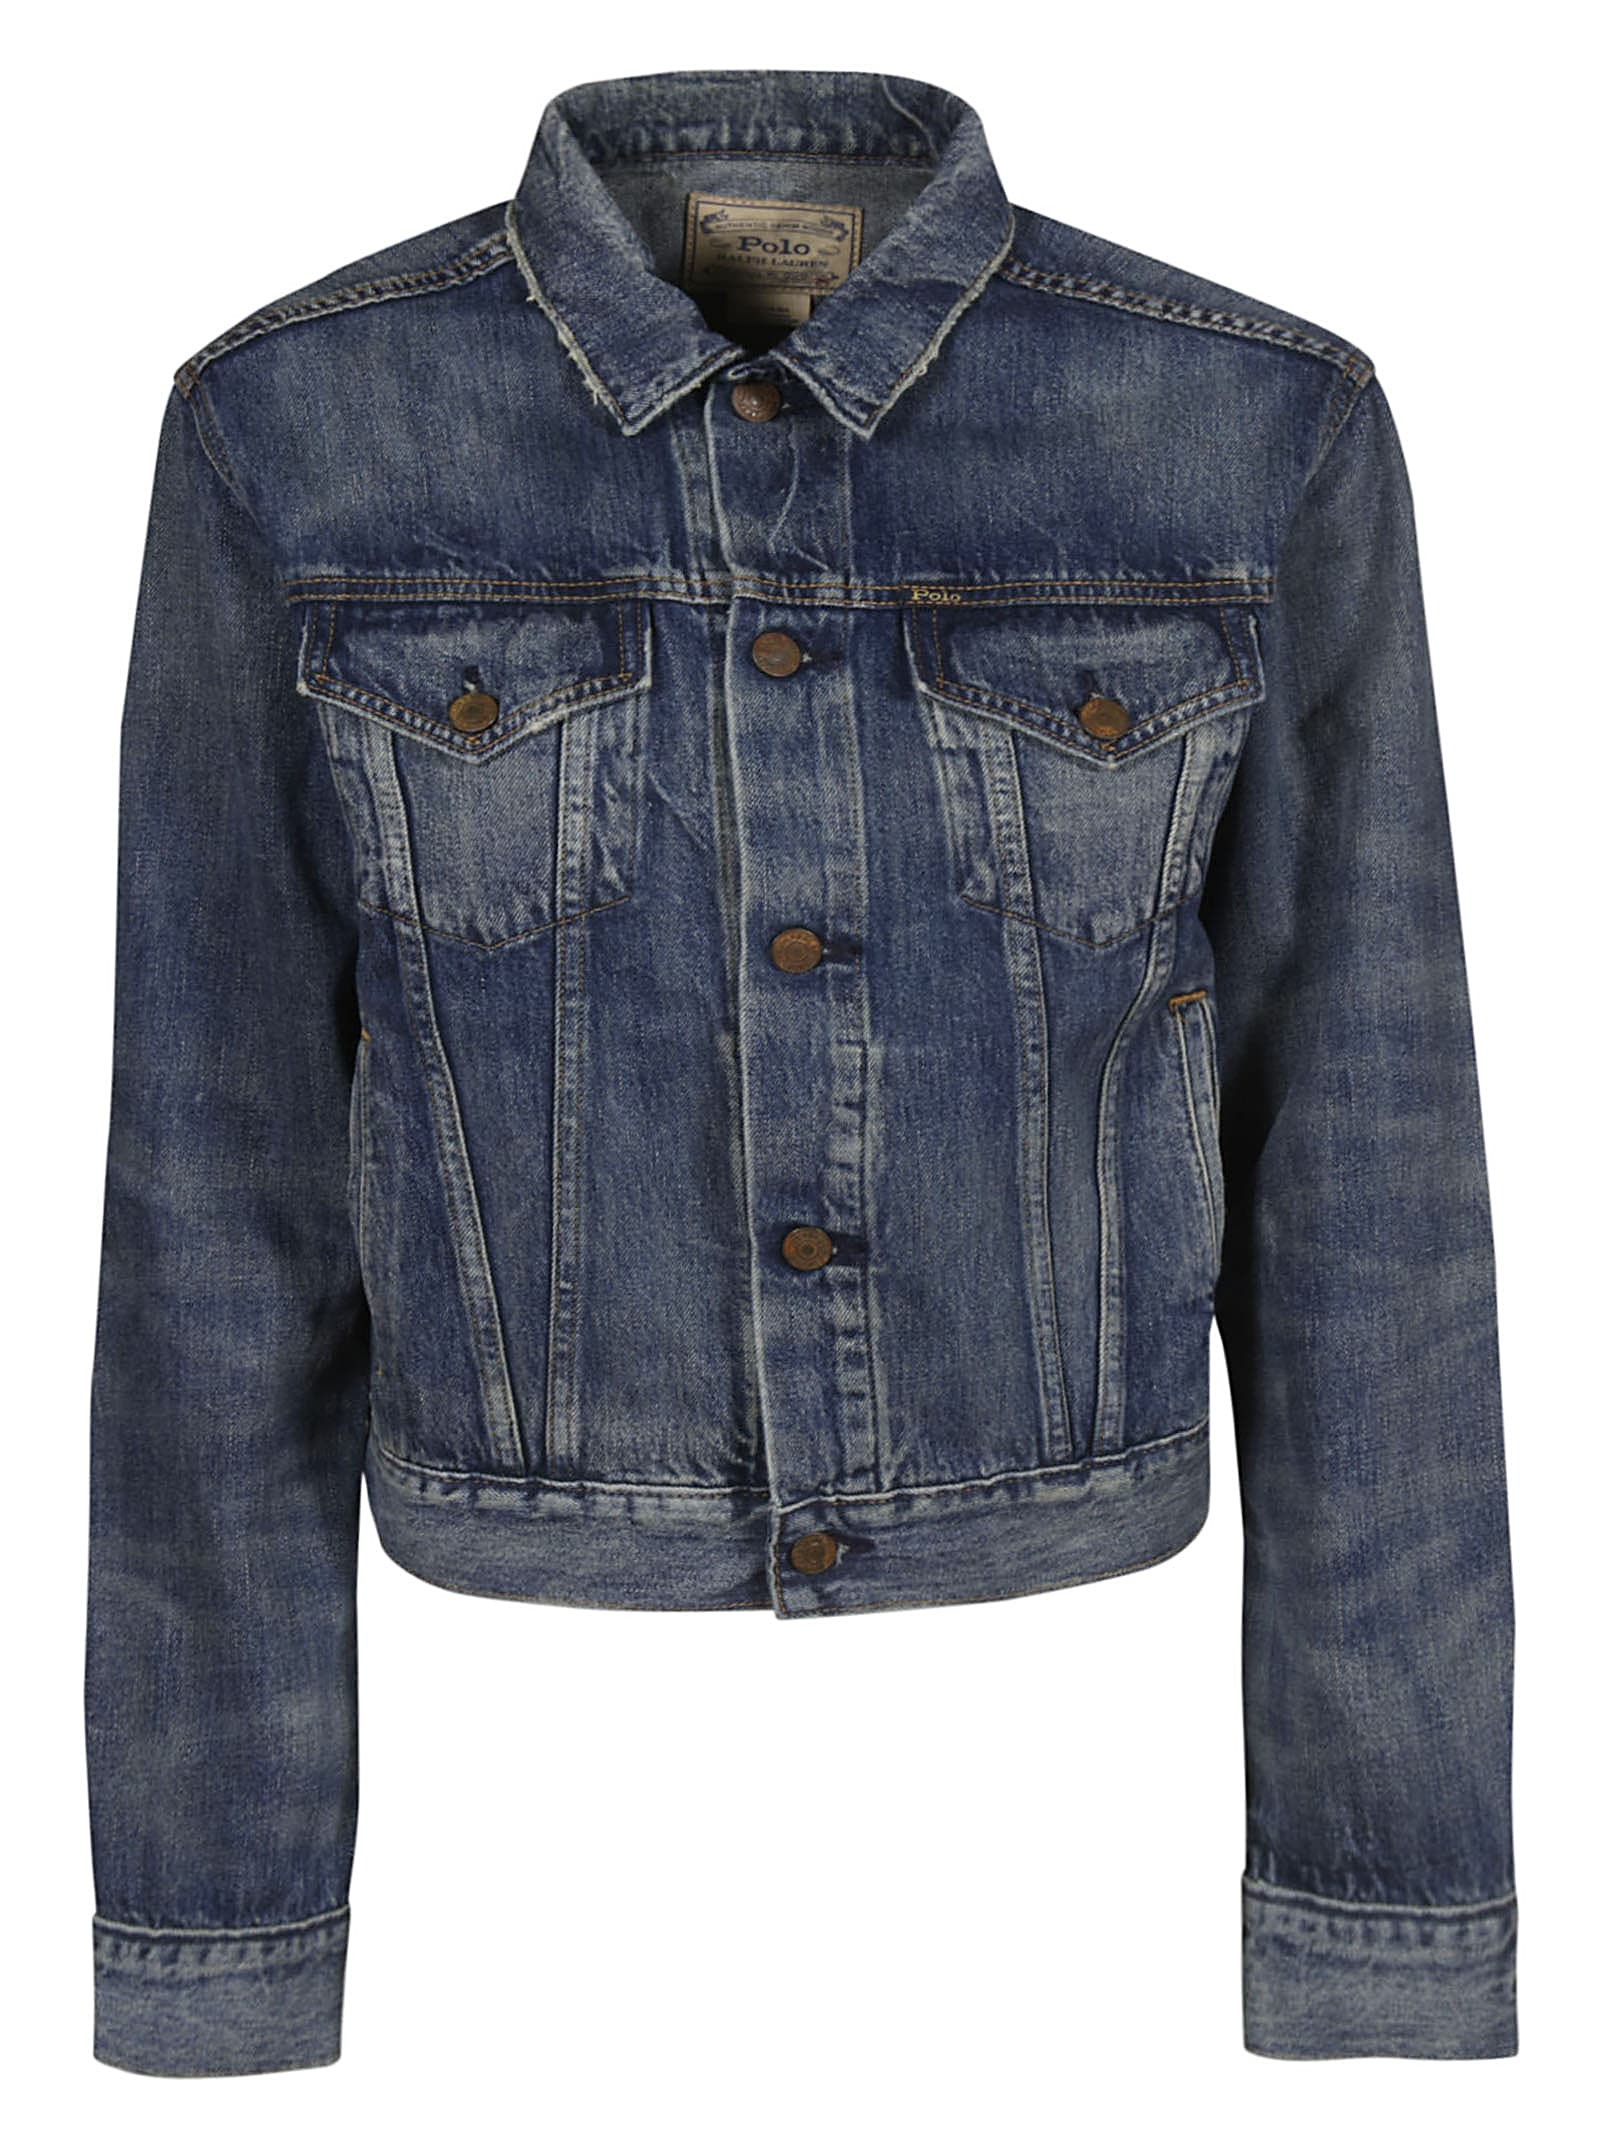 ralph lauren jeans jacket